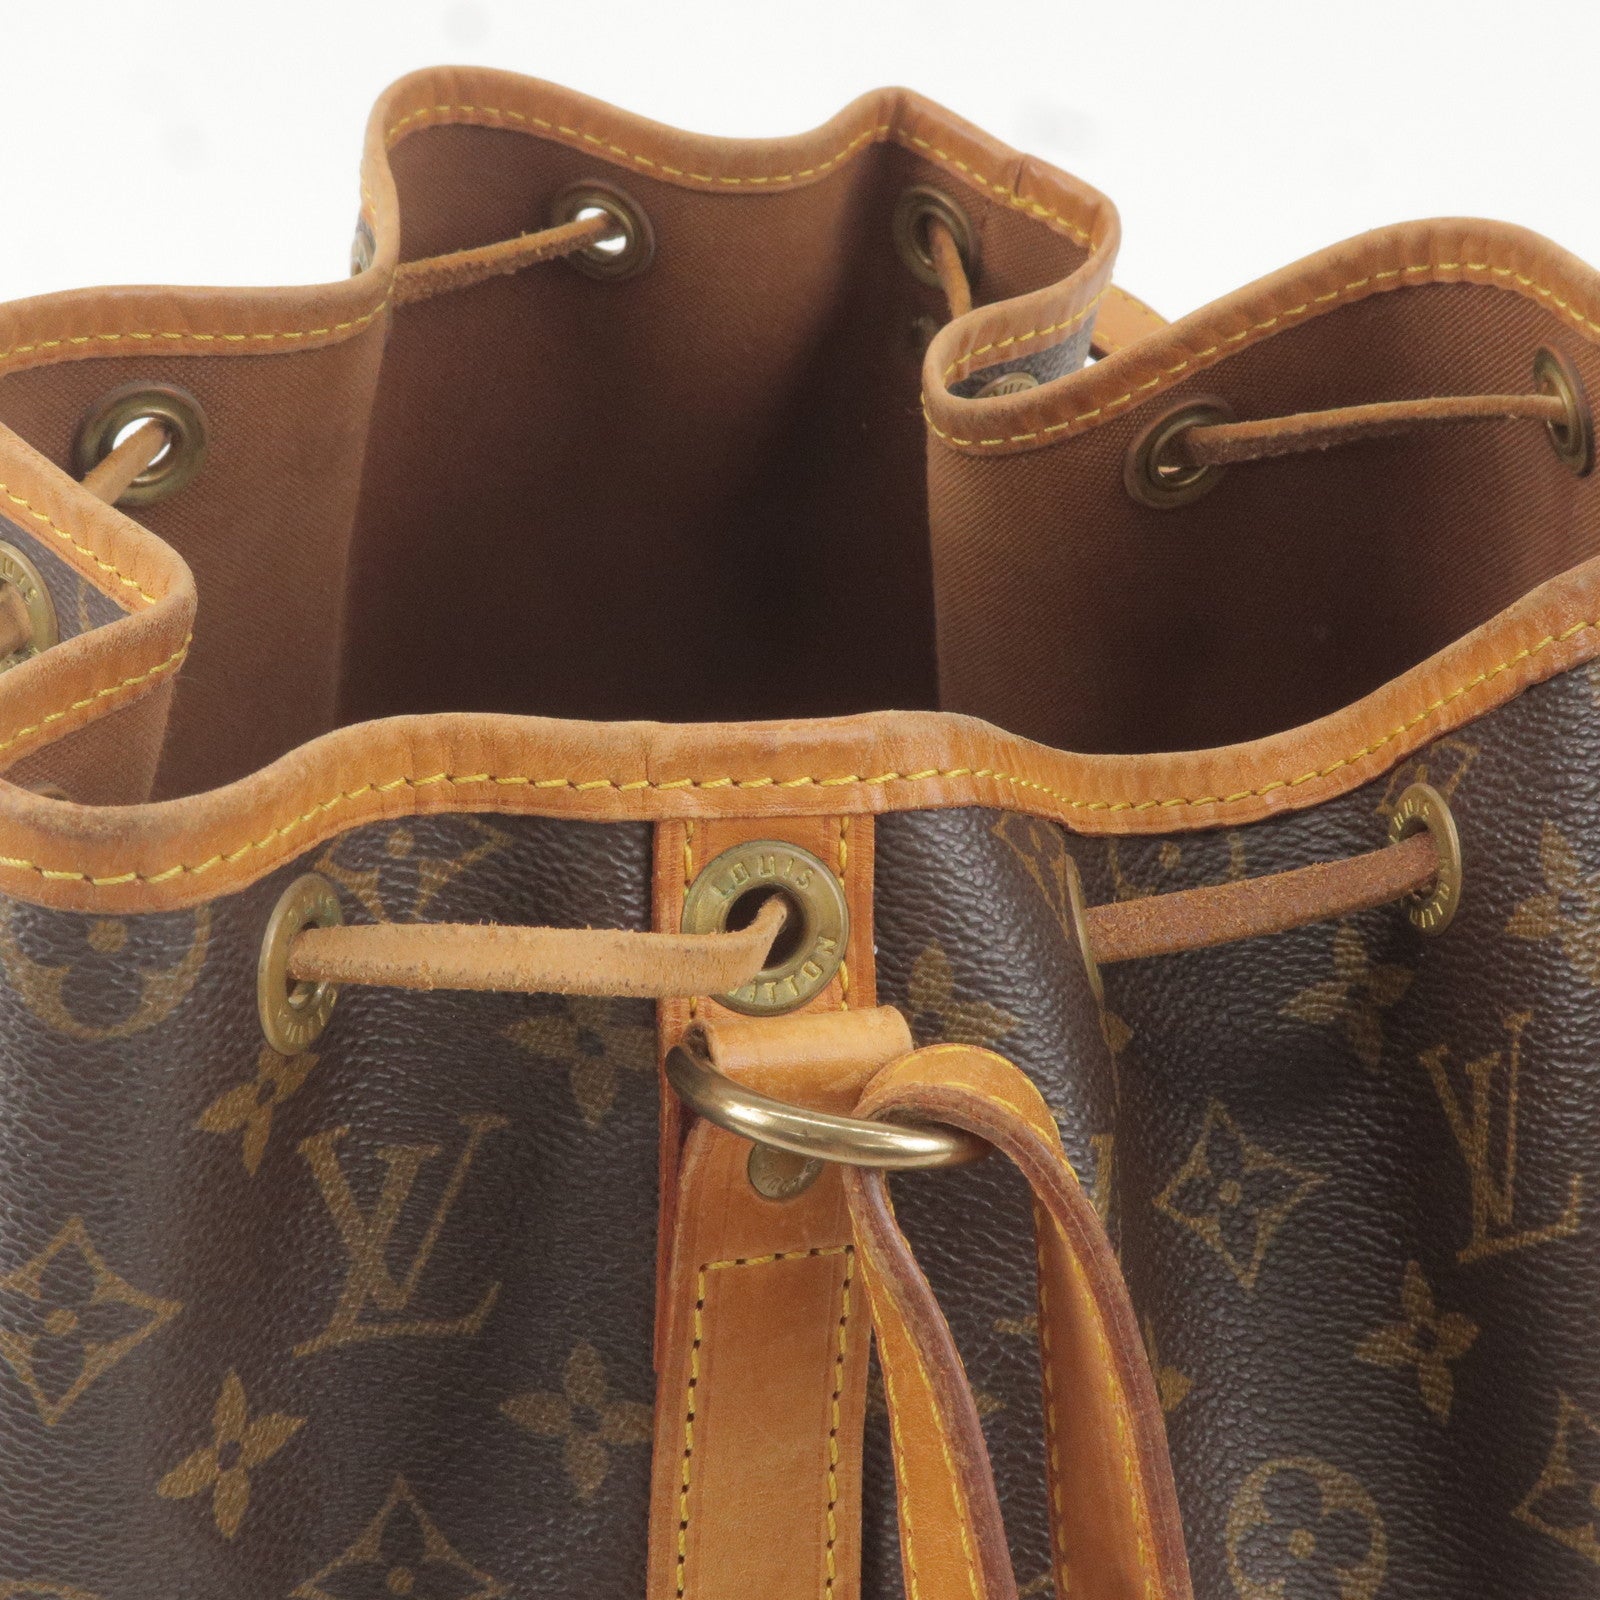 Louis Vuitton Maxi Multi Pochette Accessories Khaki Green/Beige in